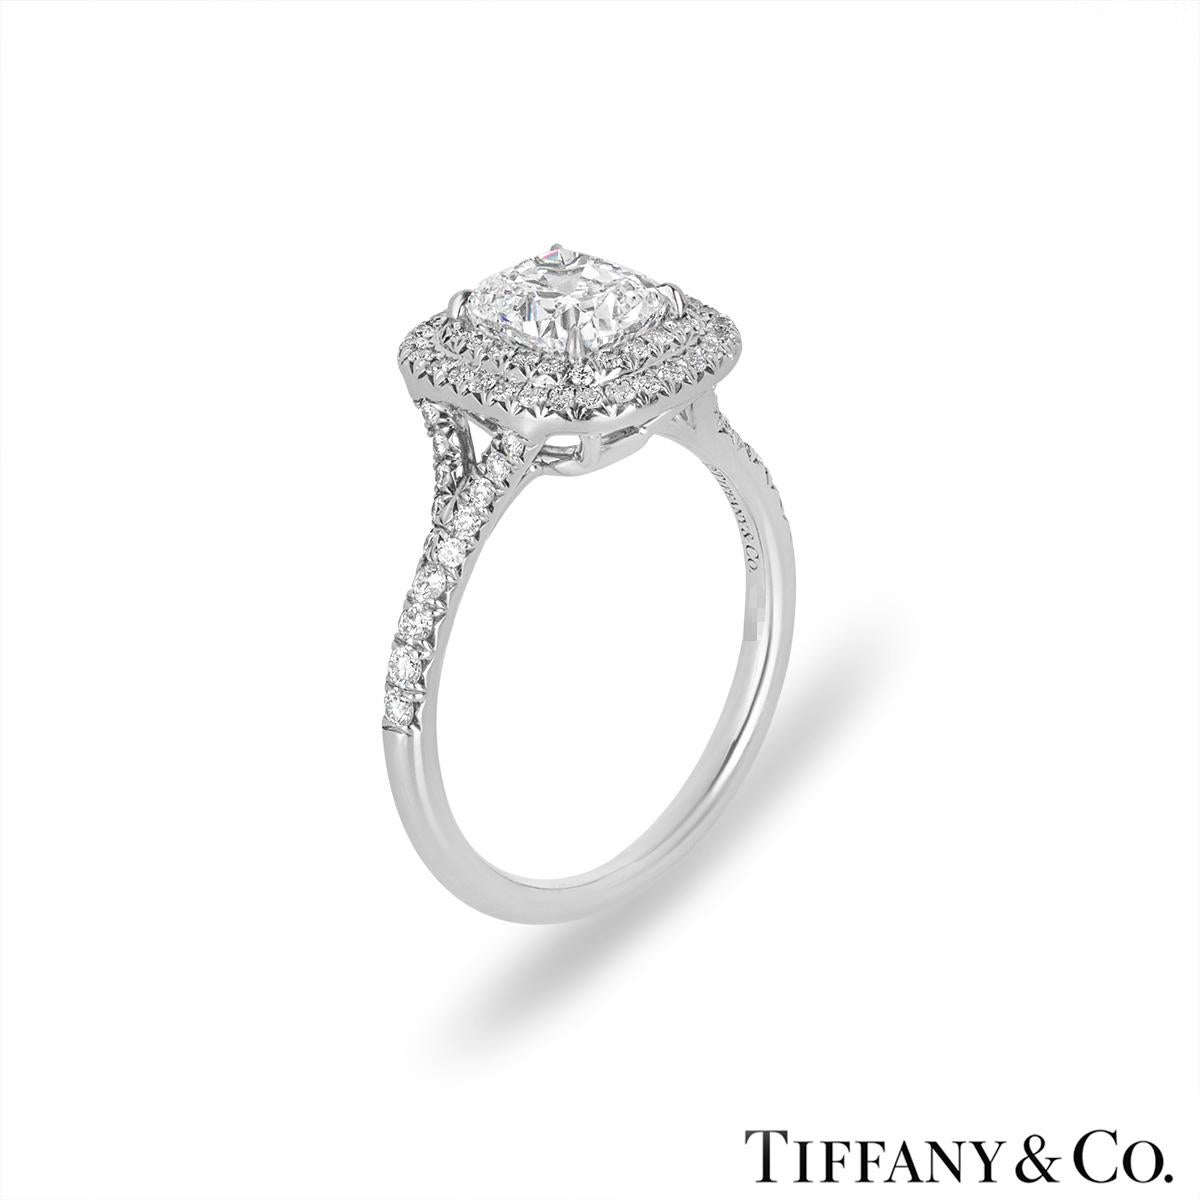 Bague de fiançailles en diamant platine de Tiffany & Co. de la collection Soleste. La bague est sertie au centre d'un magnifique diamant de taille coussin pesant 1,55ct, de couleur G et de pureté VS1. Le diamant central est complété par un double